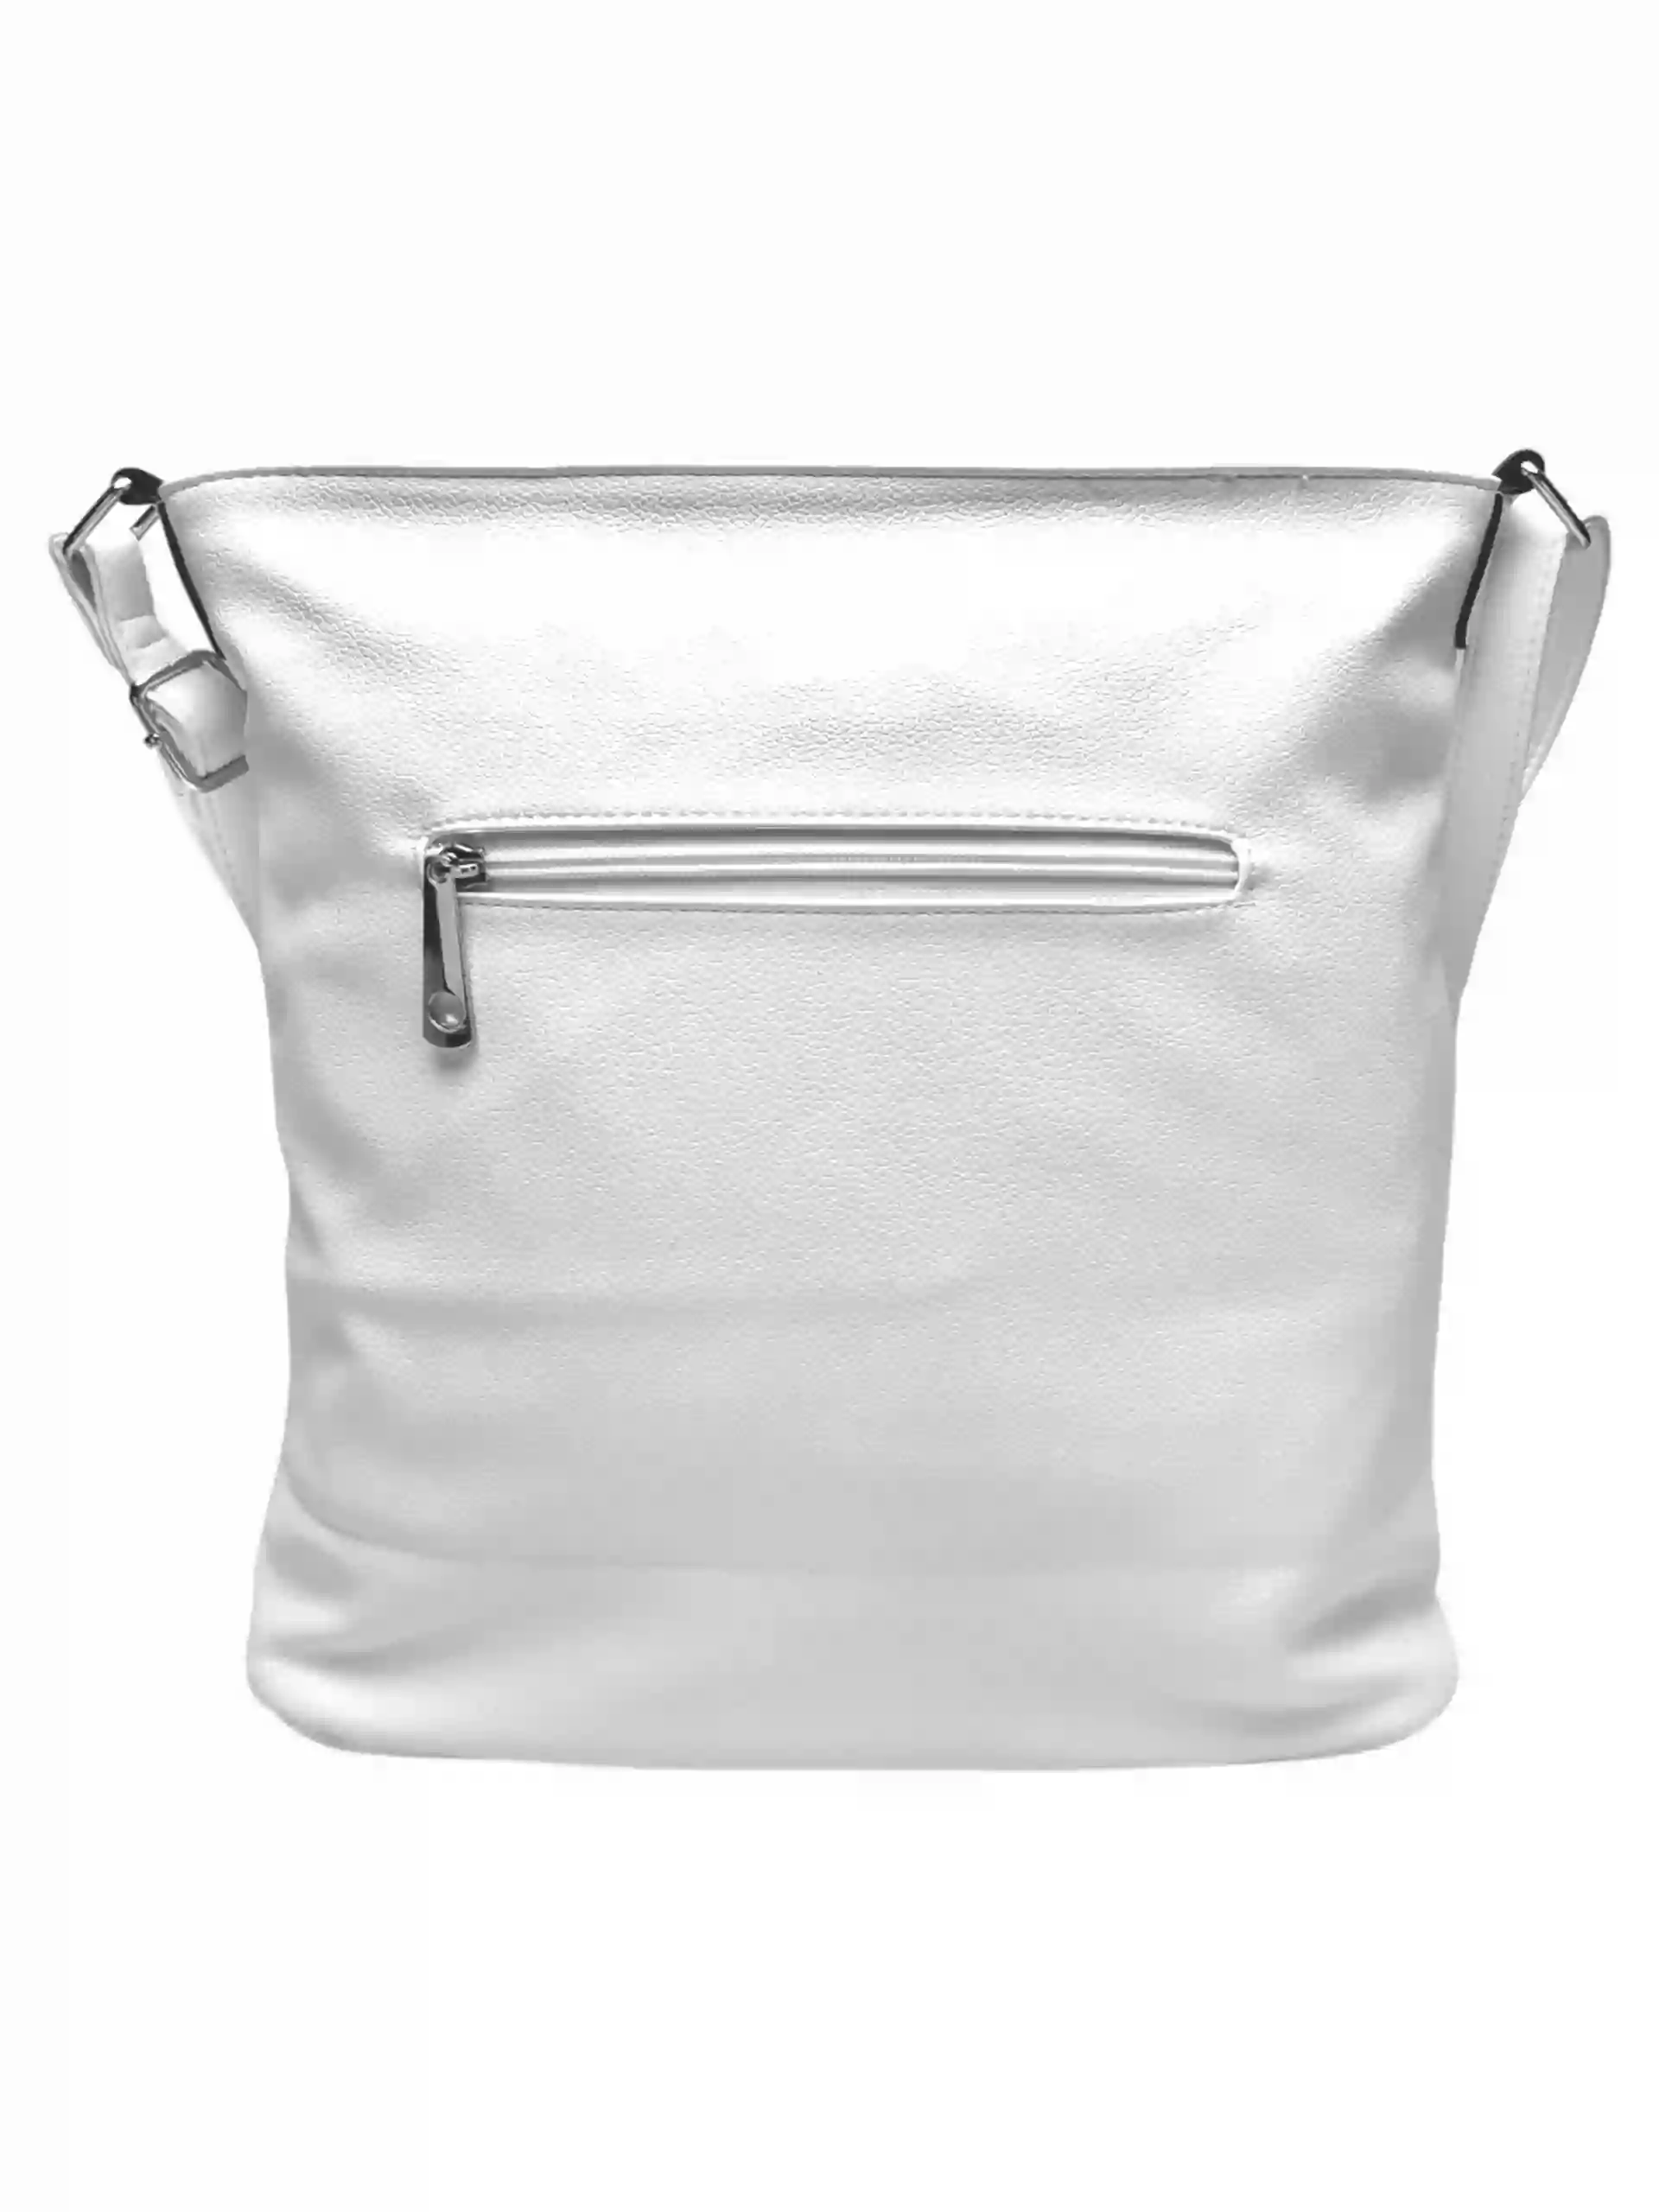 Bílá crossbody kabelka s šikmými kapsami, Tapple, H18007, zadní strana crossbody kabelky